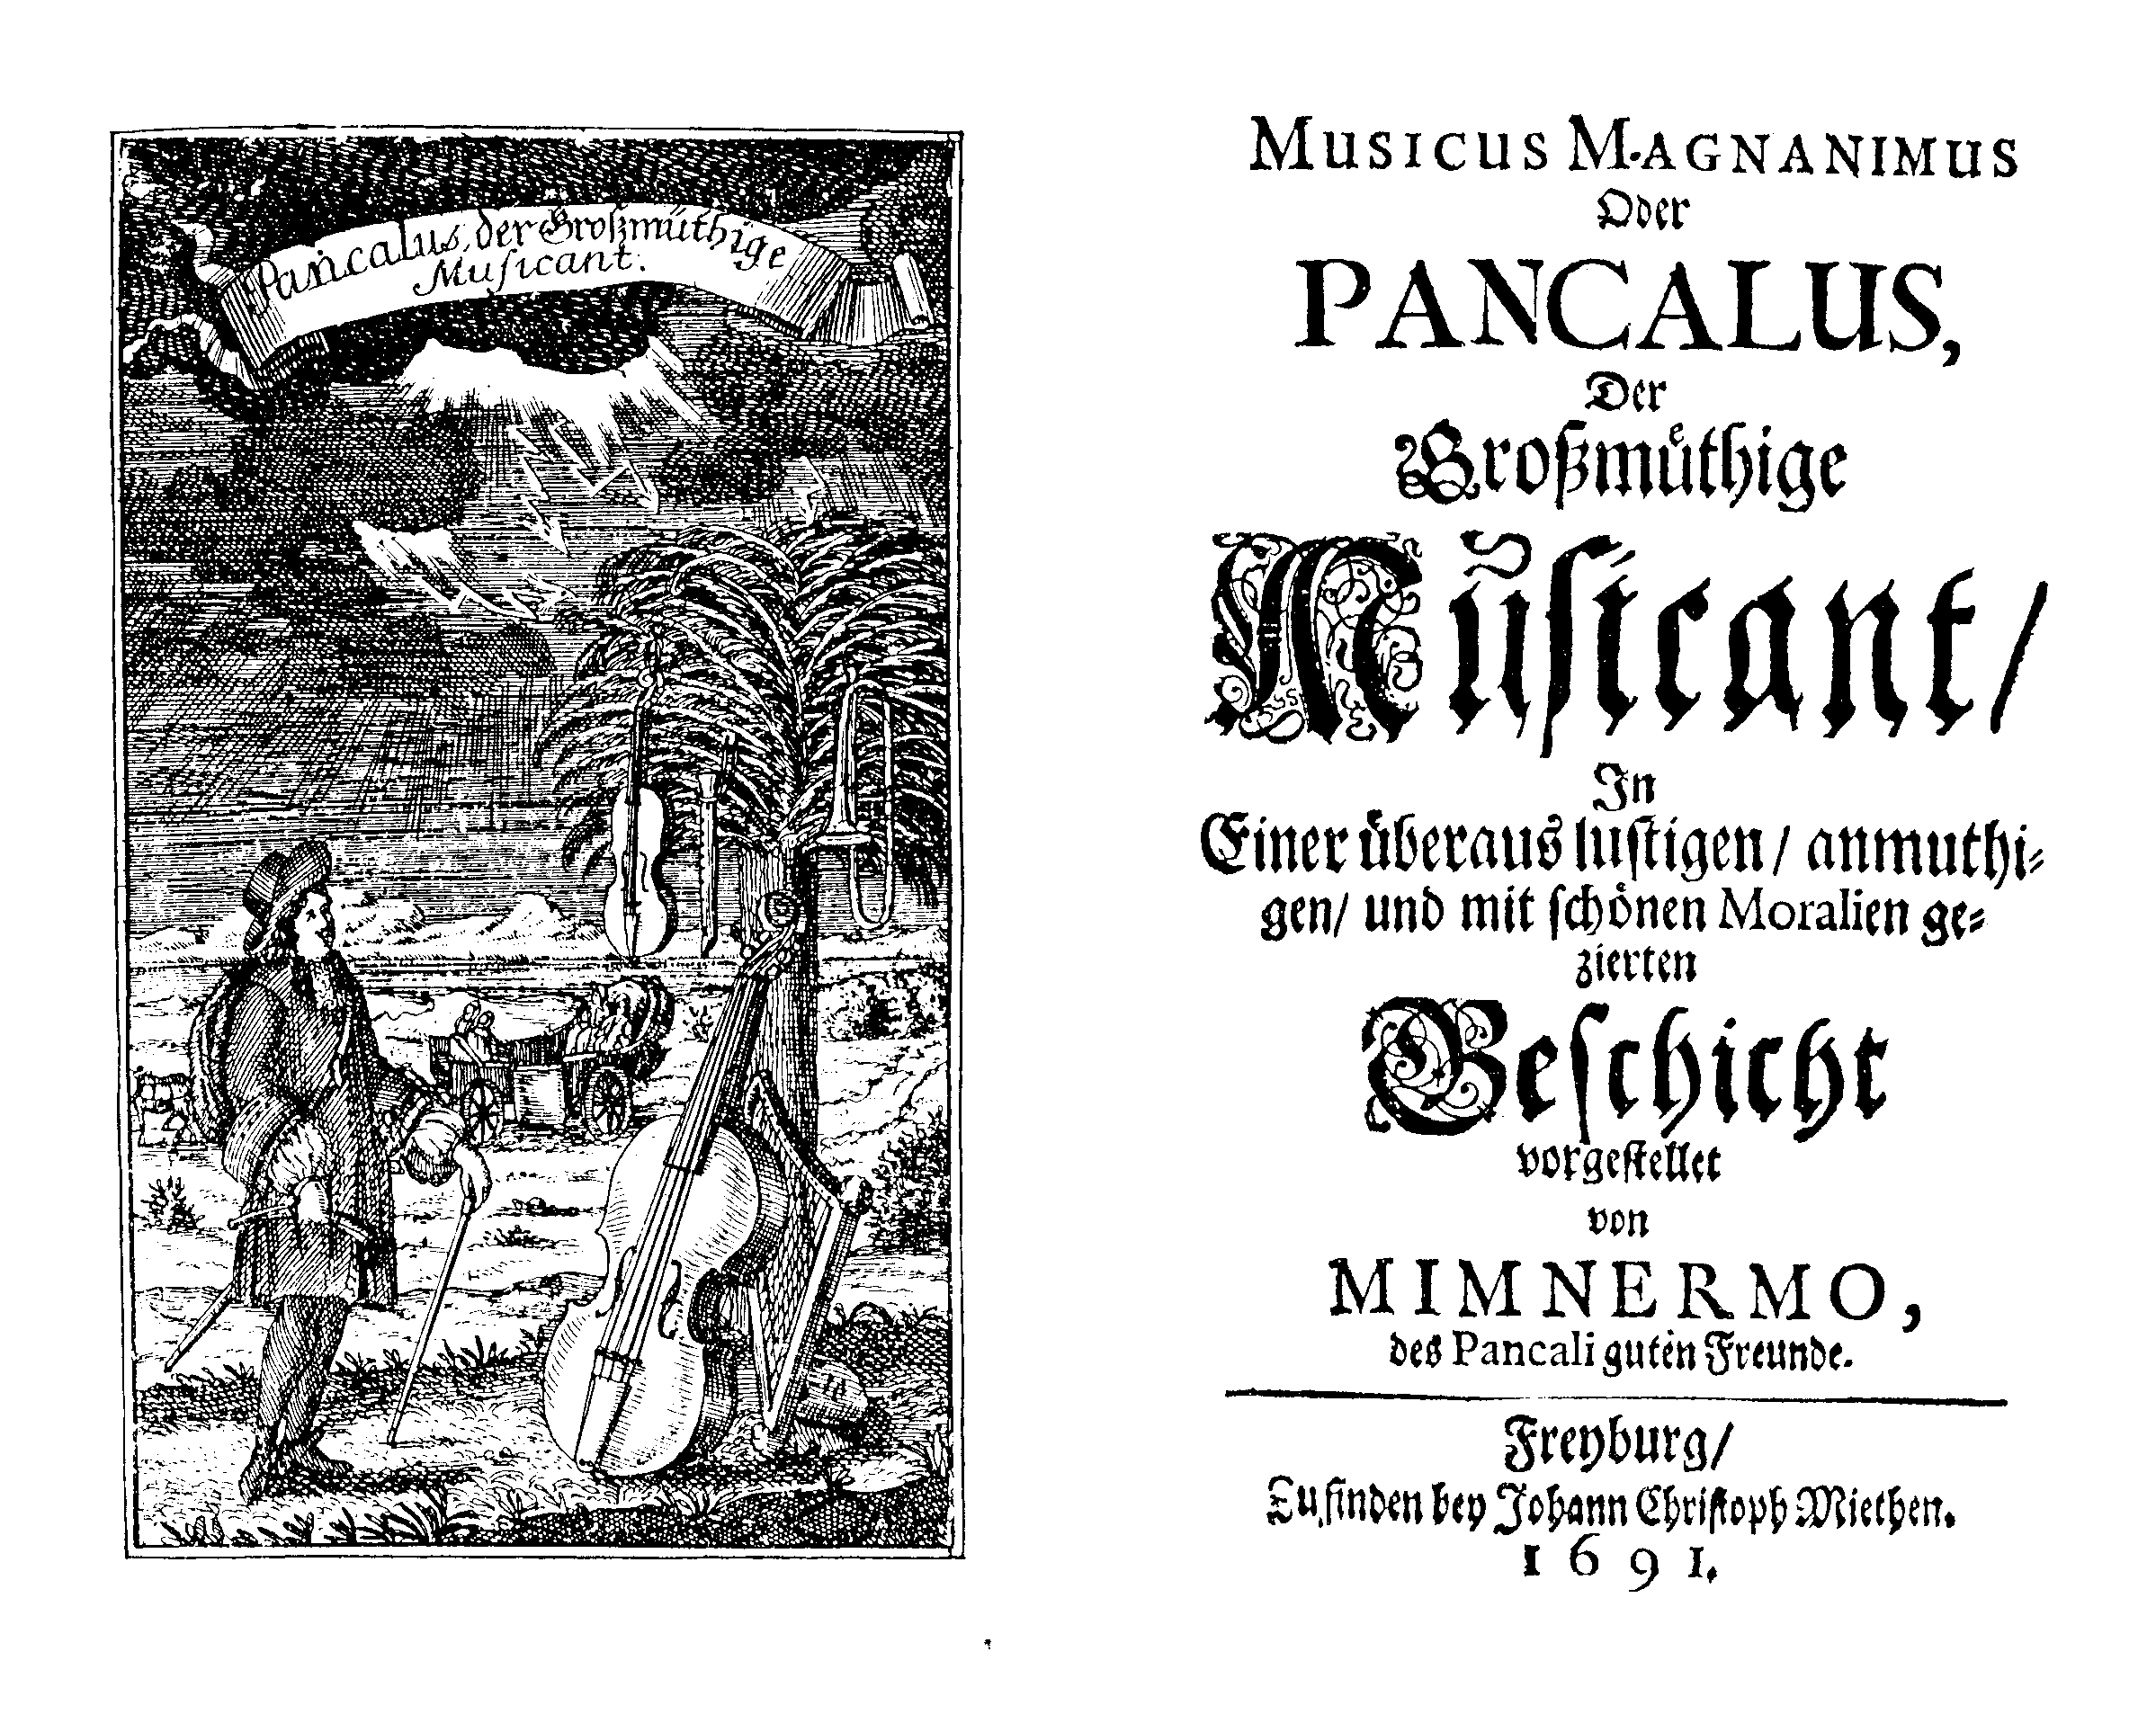 [Wolfgang Caspar Printz? Johann Kuhnau? =] Der großmüthige Musicant Pancalus, oder Musicus Magnanimus (Freyburg [recte: Dresden]: J. C. Mieth, 1691).